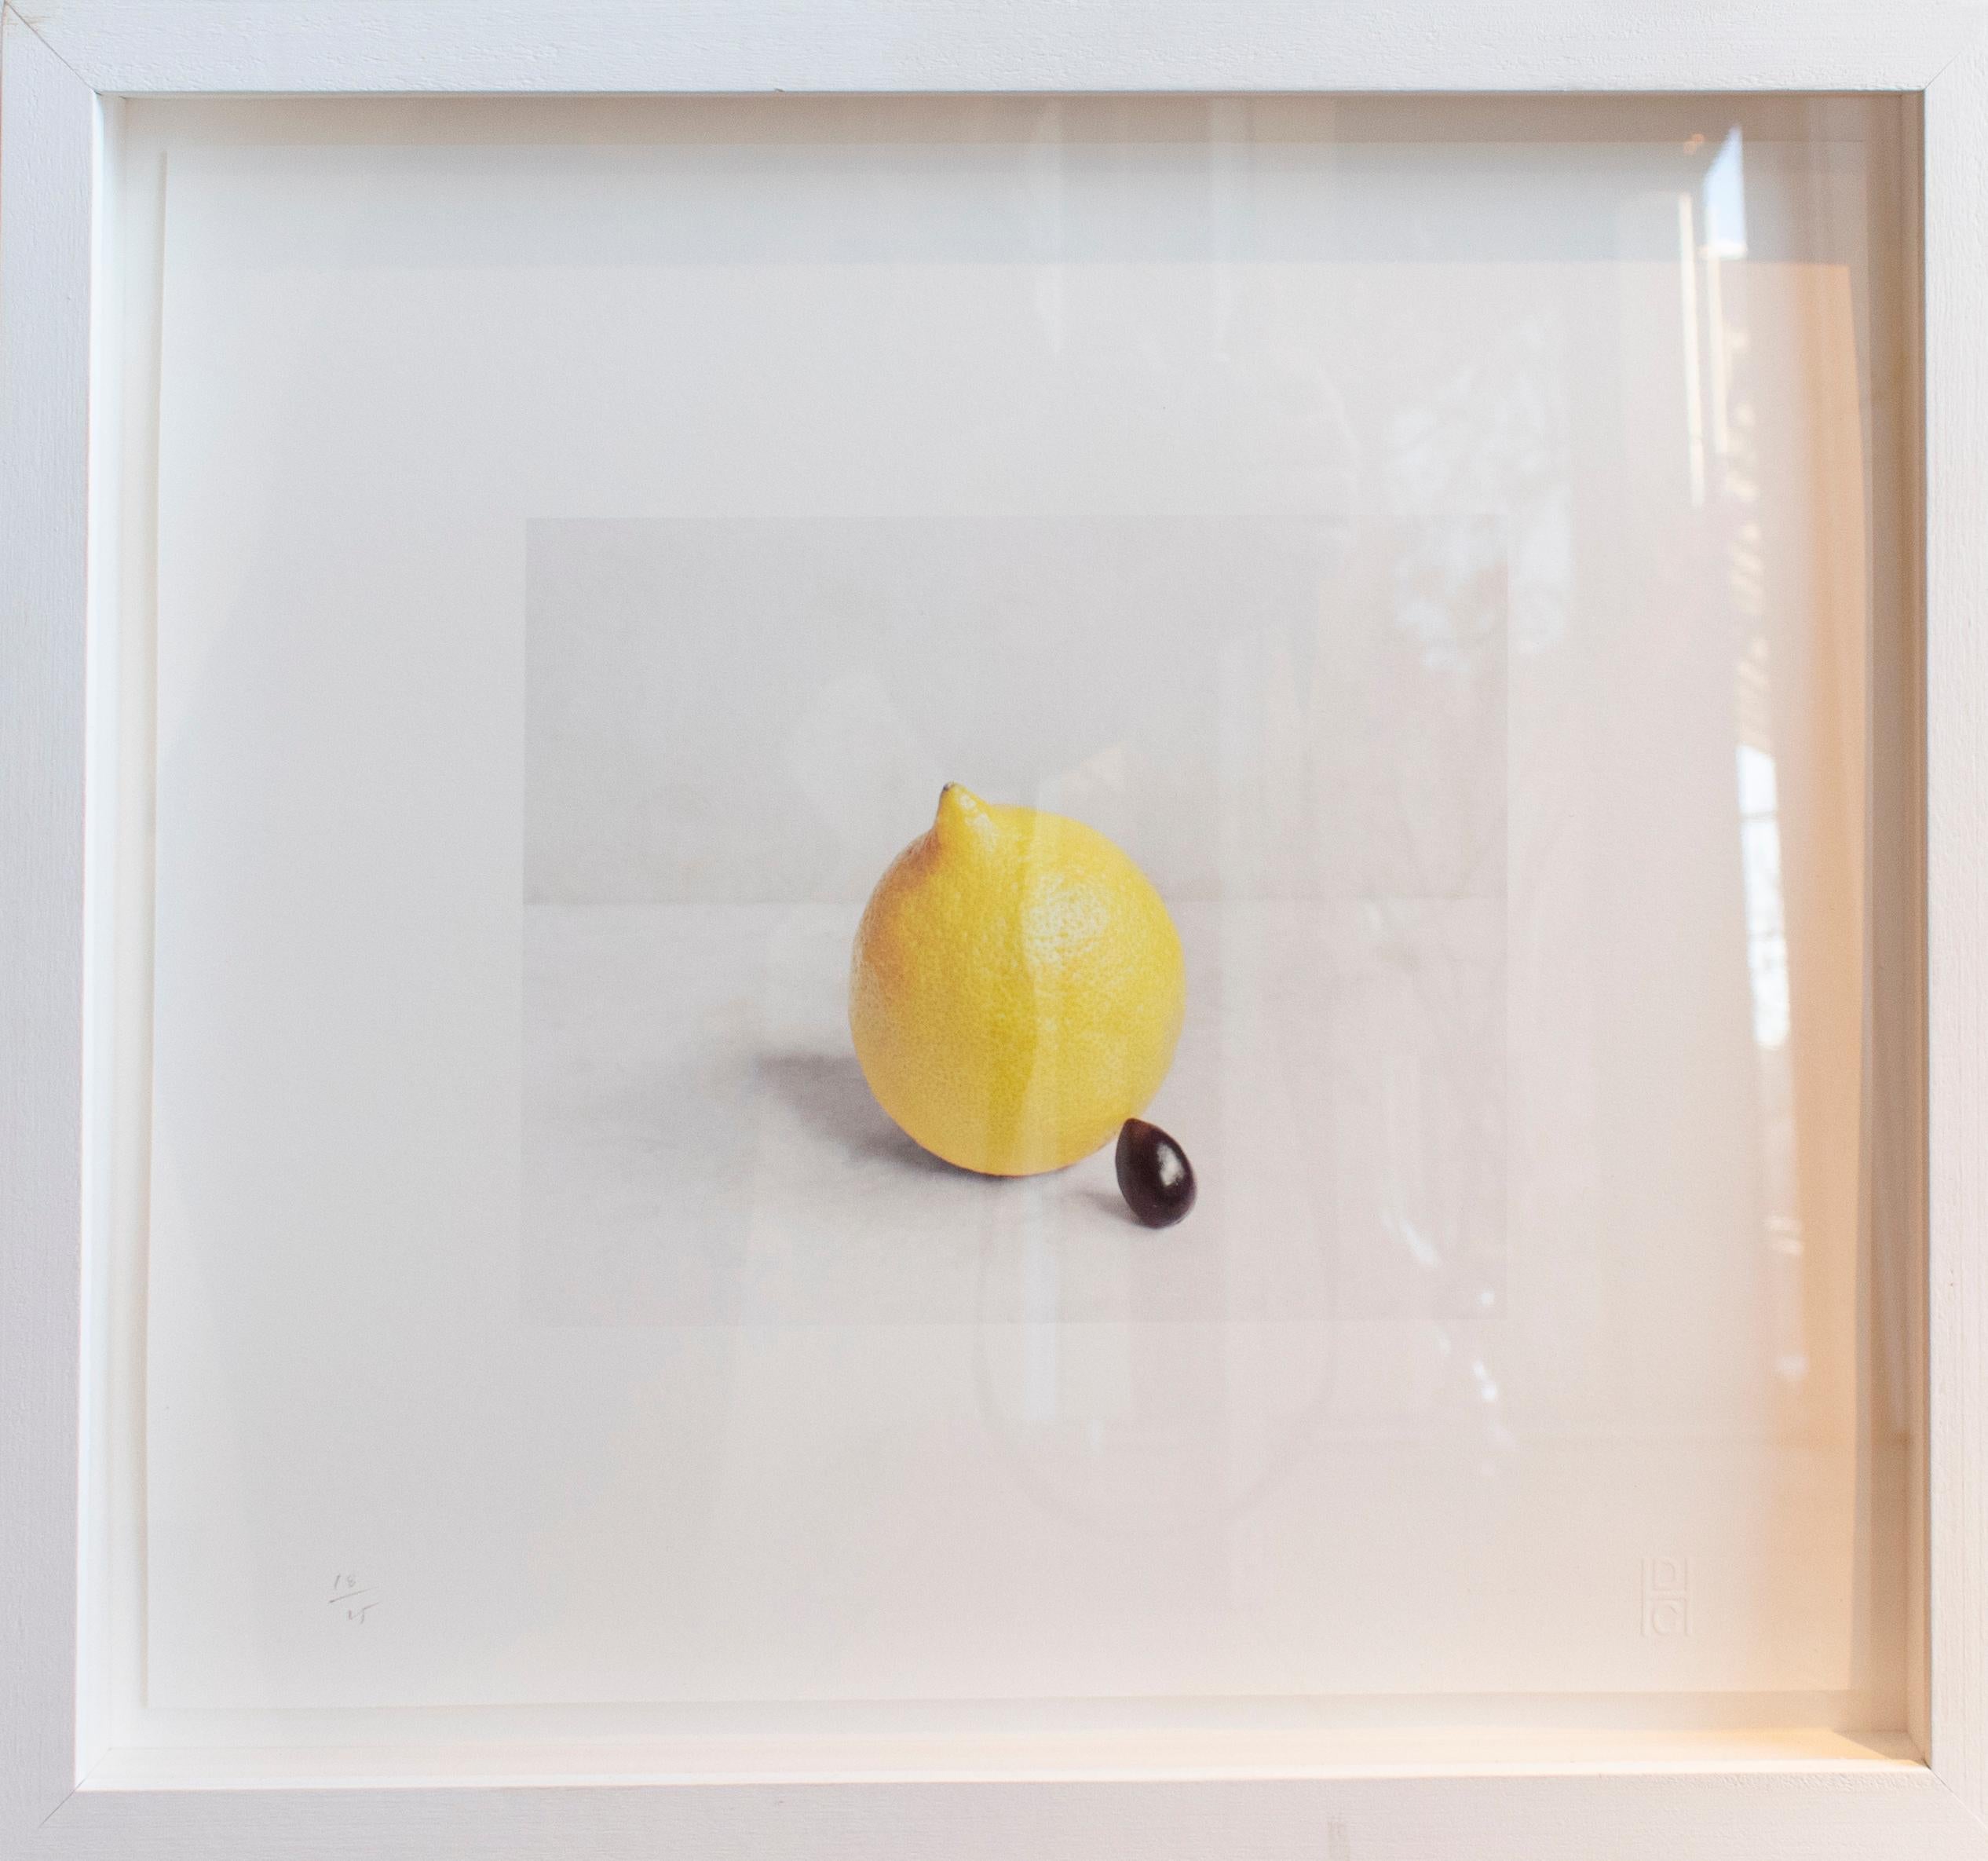 Lemon & Black Olive: gerahmte Farbstillleben Fotografie von Obst und Gemüse – Photograph von David Halliday